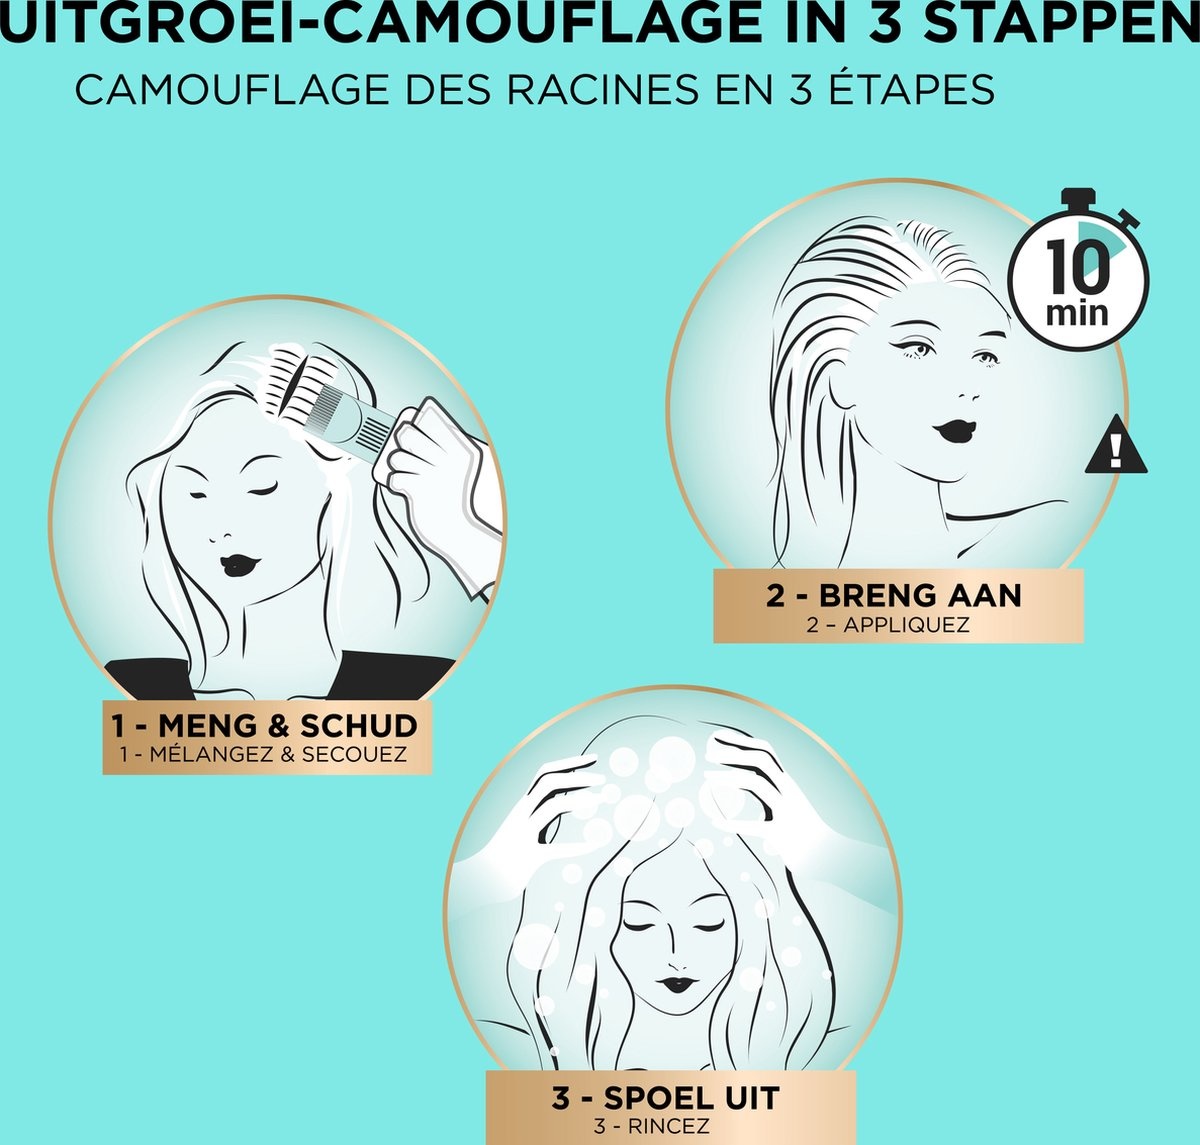 L’Oréal Paris Magic Retouch Permanent 6 - Donkerblond - Permanente Haarkleuring